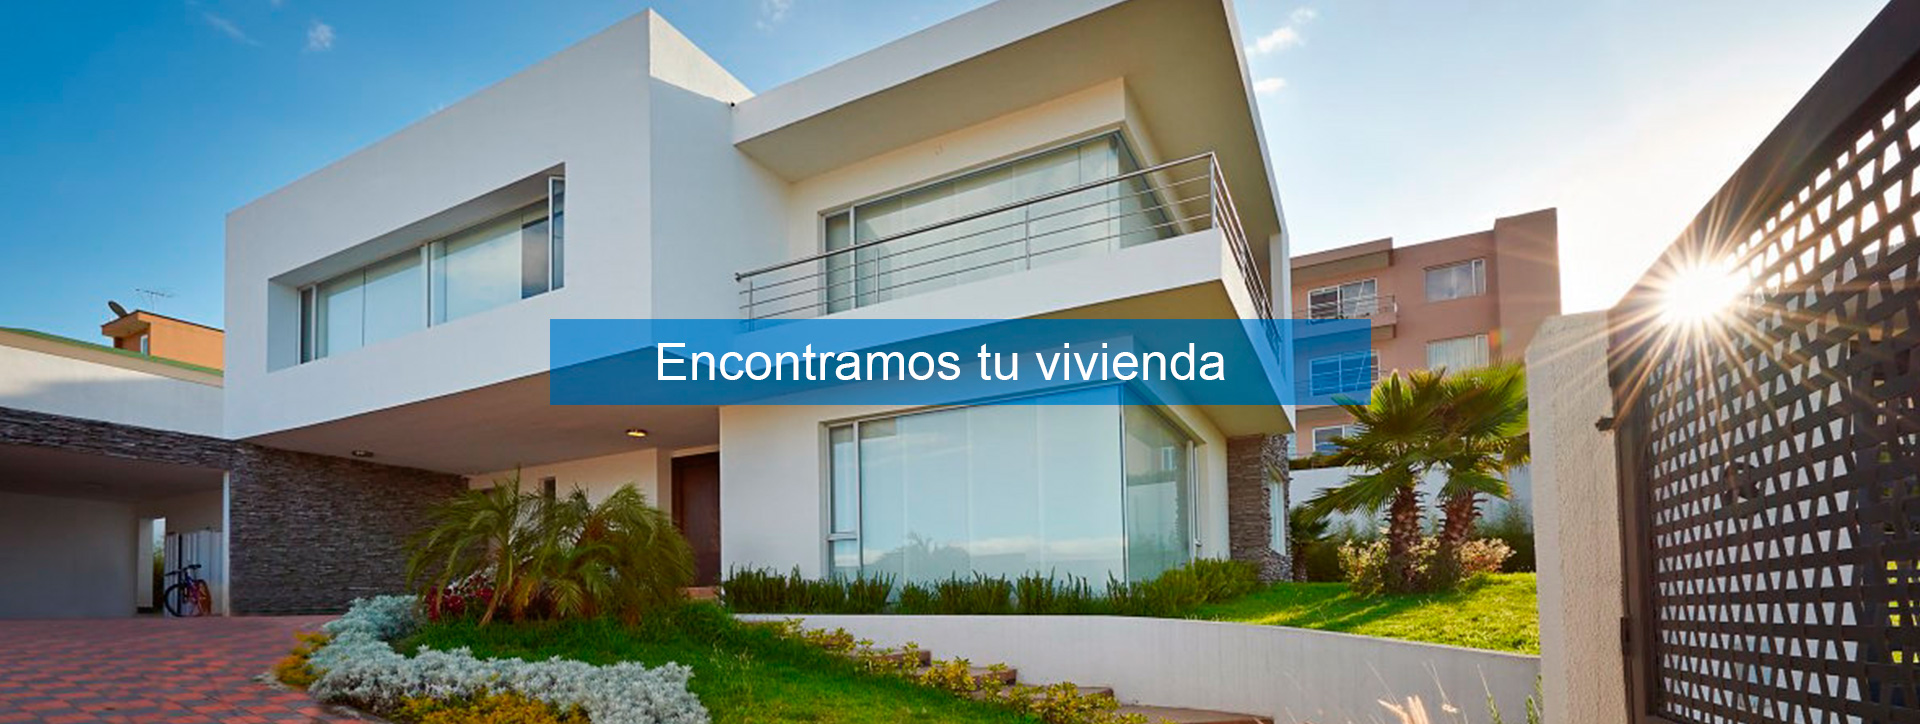 InmoJaen, Servicios Inmobiliarios, venta de pisos y casas en Jaén, Alquiler piso en Jaén